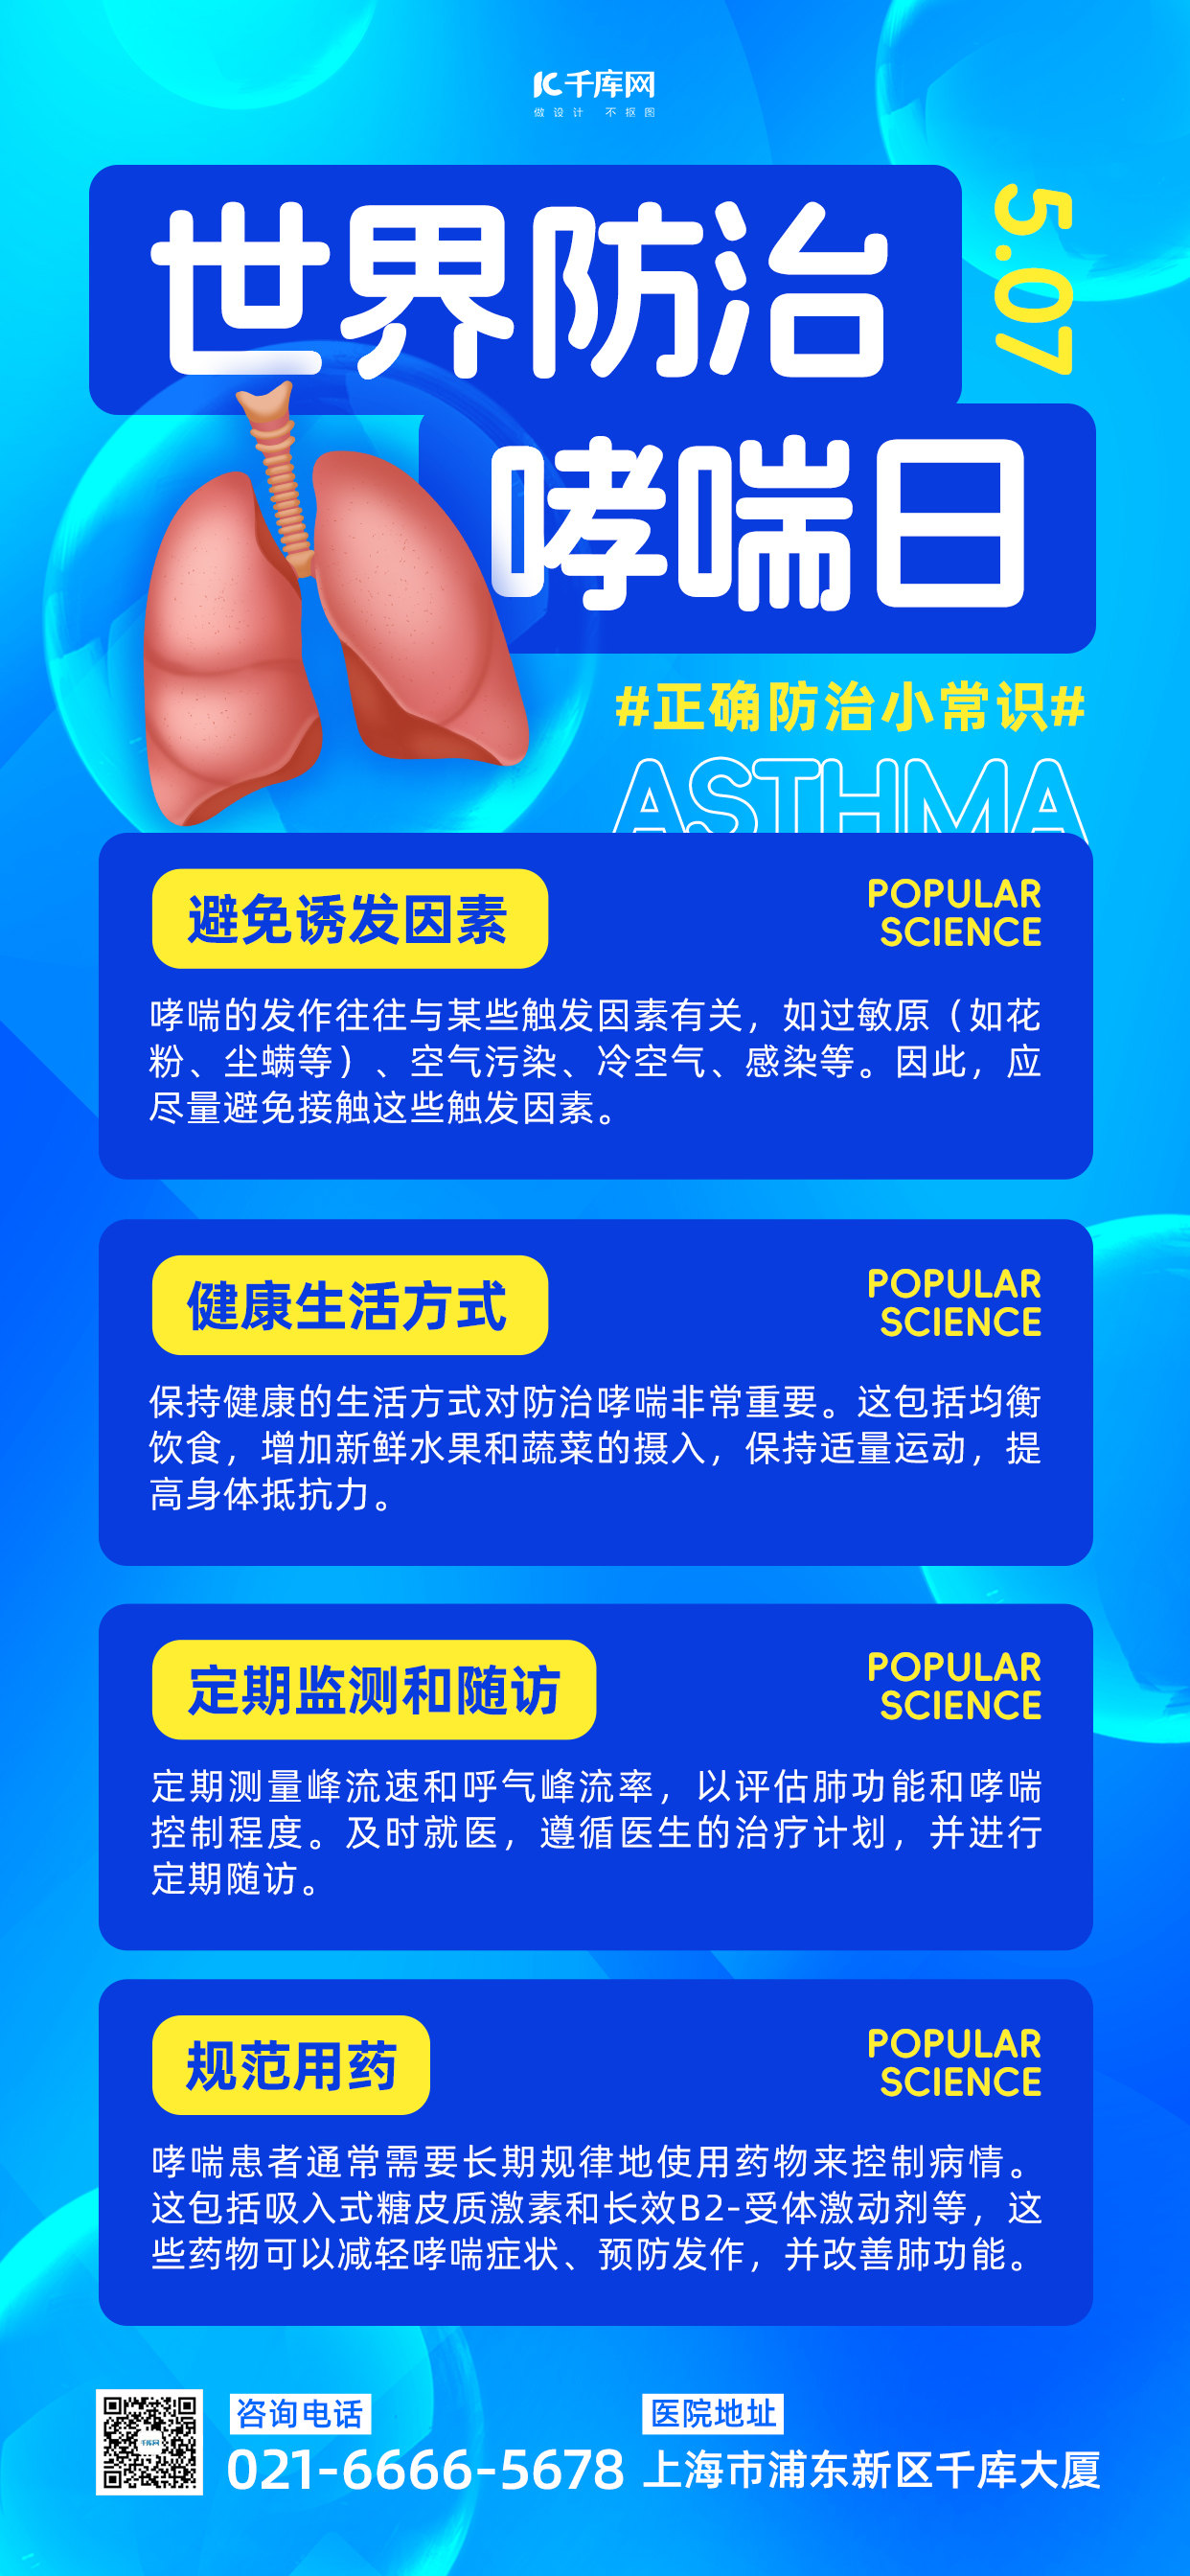 世界防治哮喘日肺部蓝色渐变长图海报创意海报设计图片